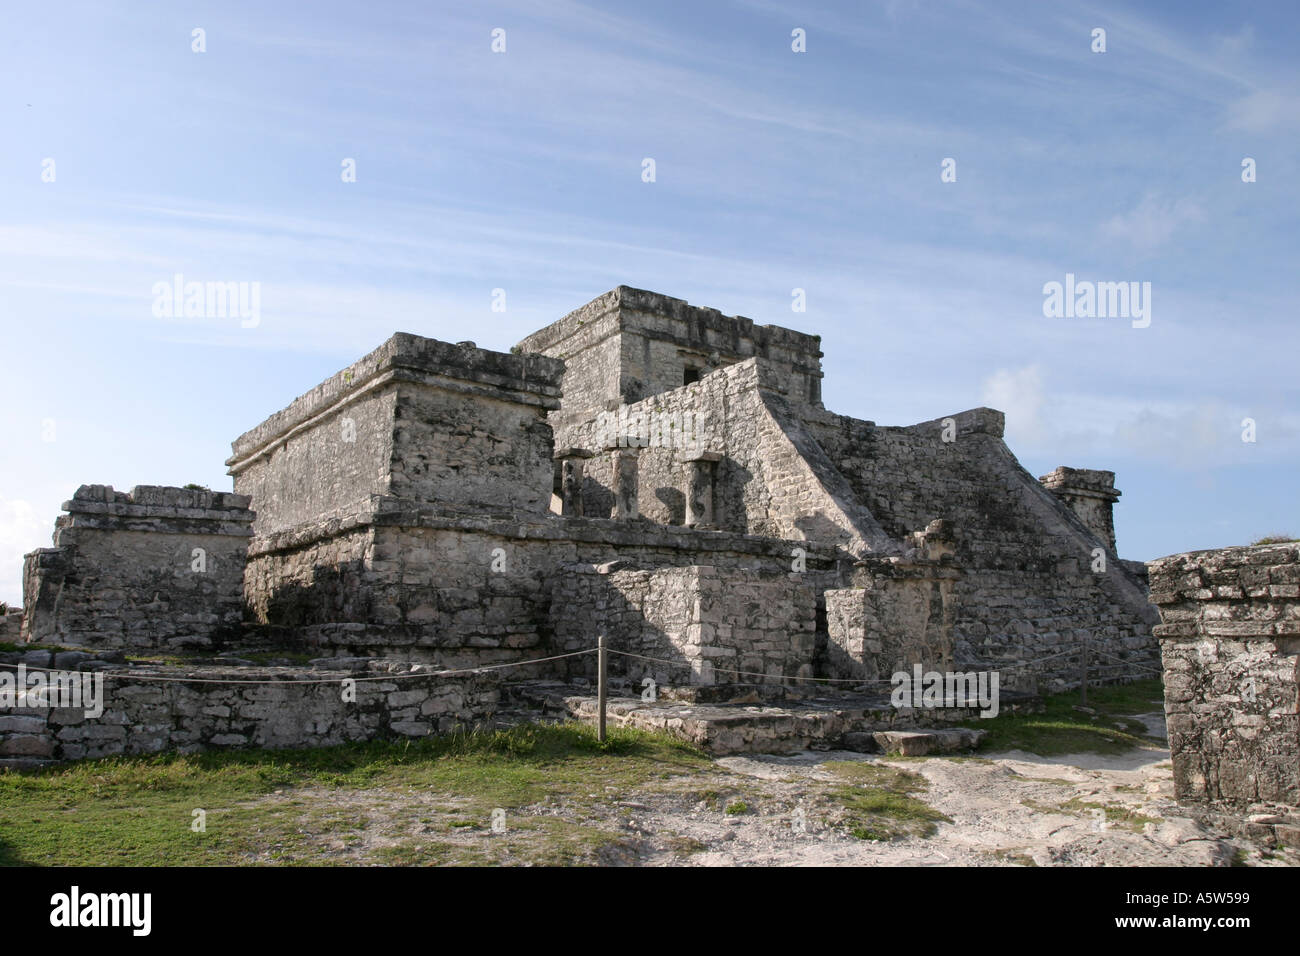 Mayan ruins at Tulum Mexico Stock Photo